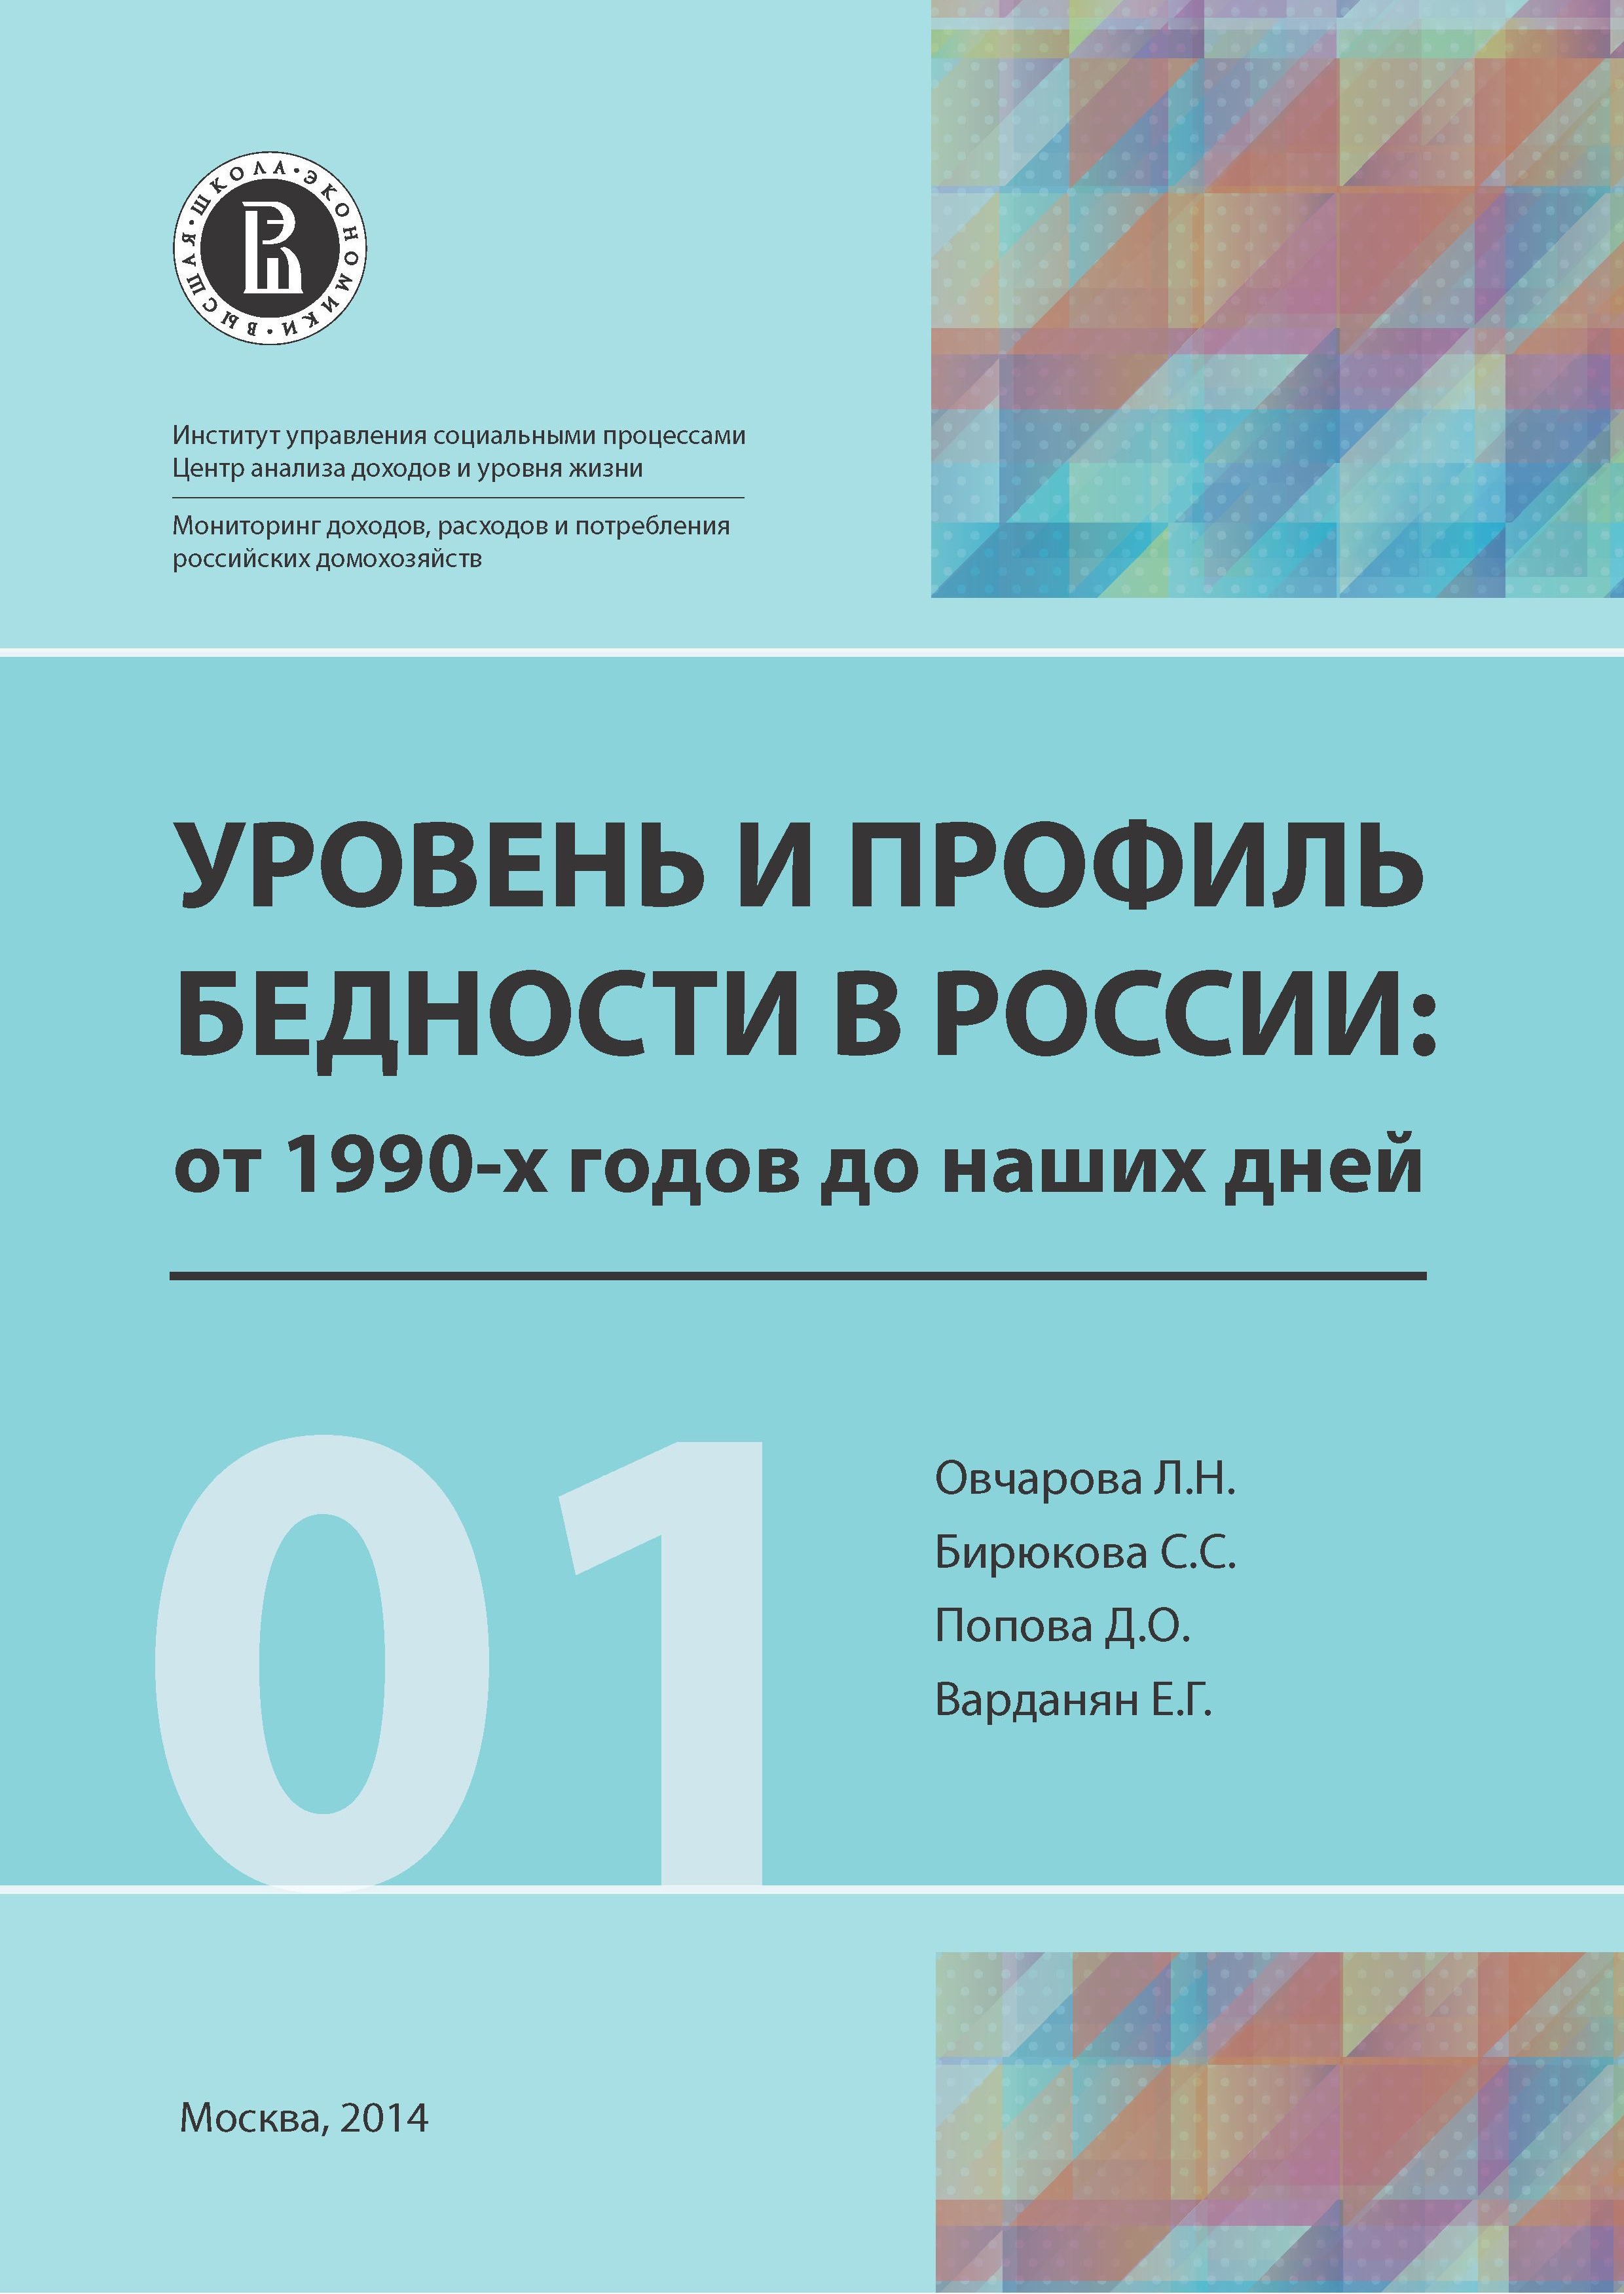 Уровень и профиль бедности в России: от 1990-х годов до наших дней